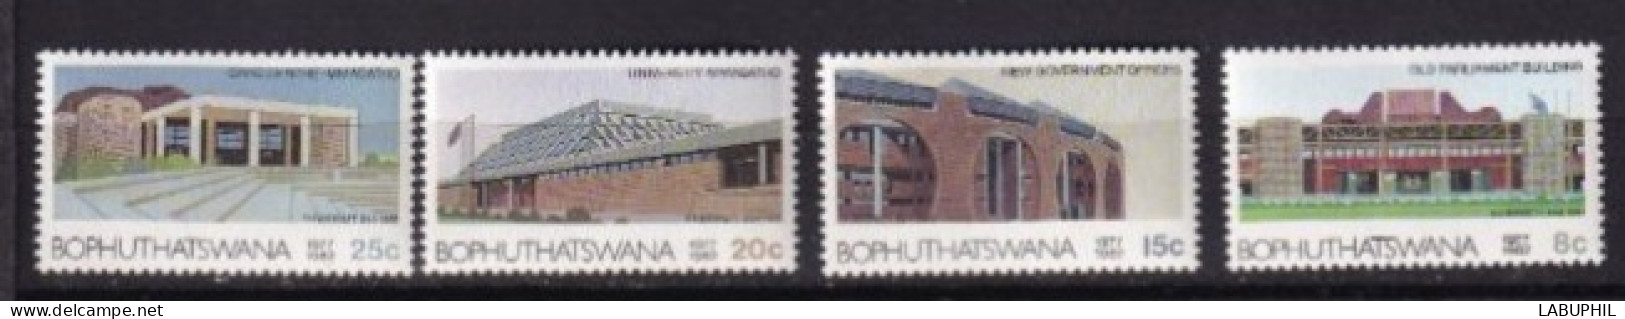 BOPHUYHATSWANA MNH 1982 - Bofutatsuana